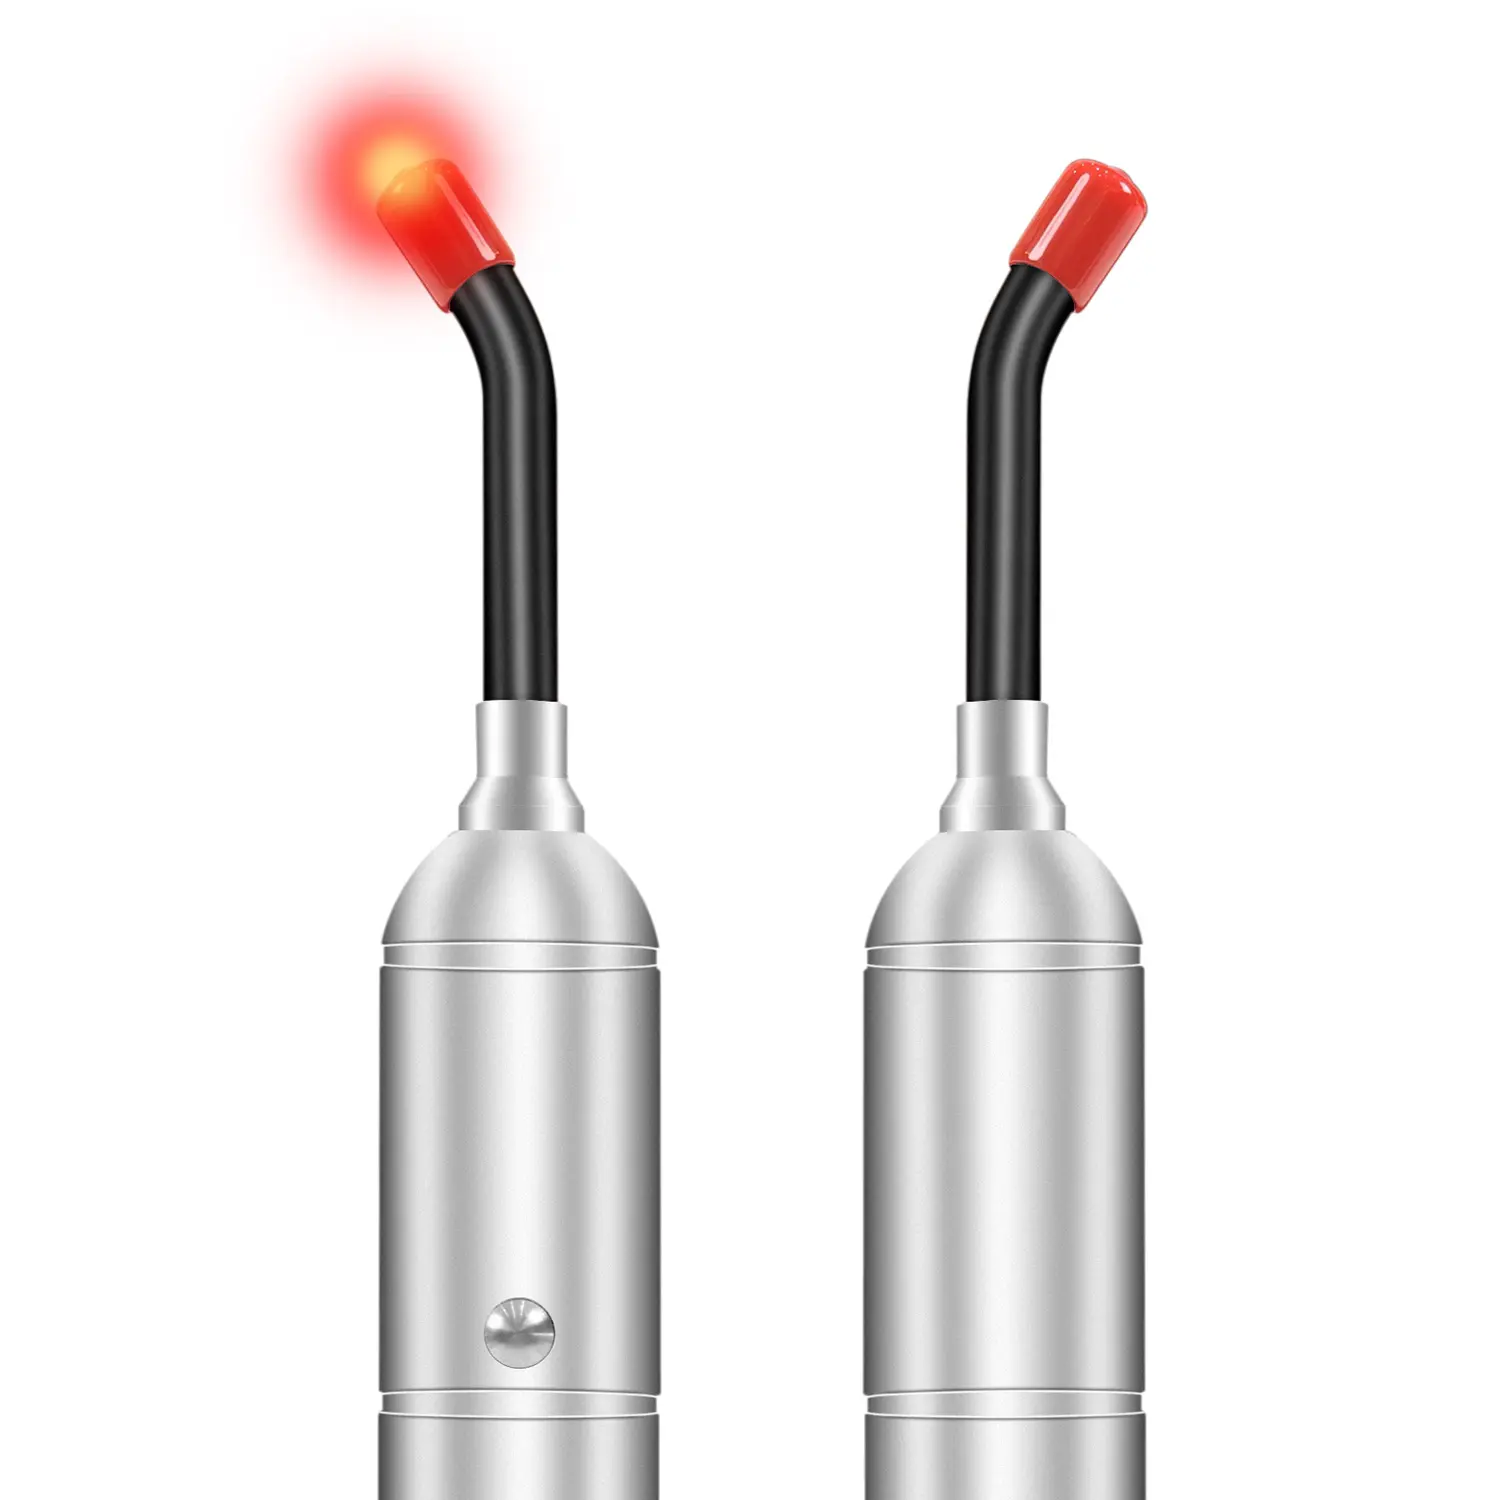 Световая вспышка для снятия боли в носу 850 нм ближнего инфракрасного света 660 нм красный фонарь для терапии